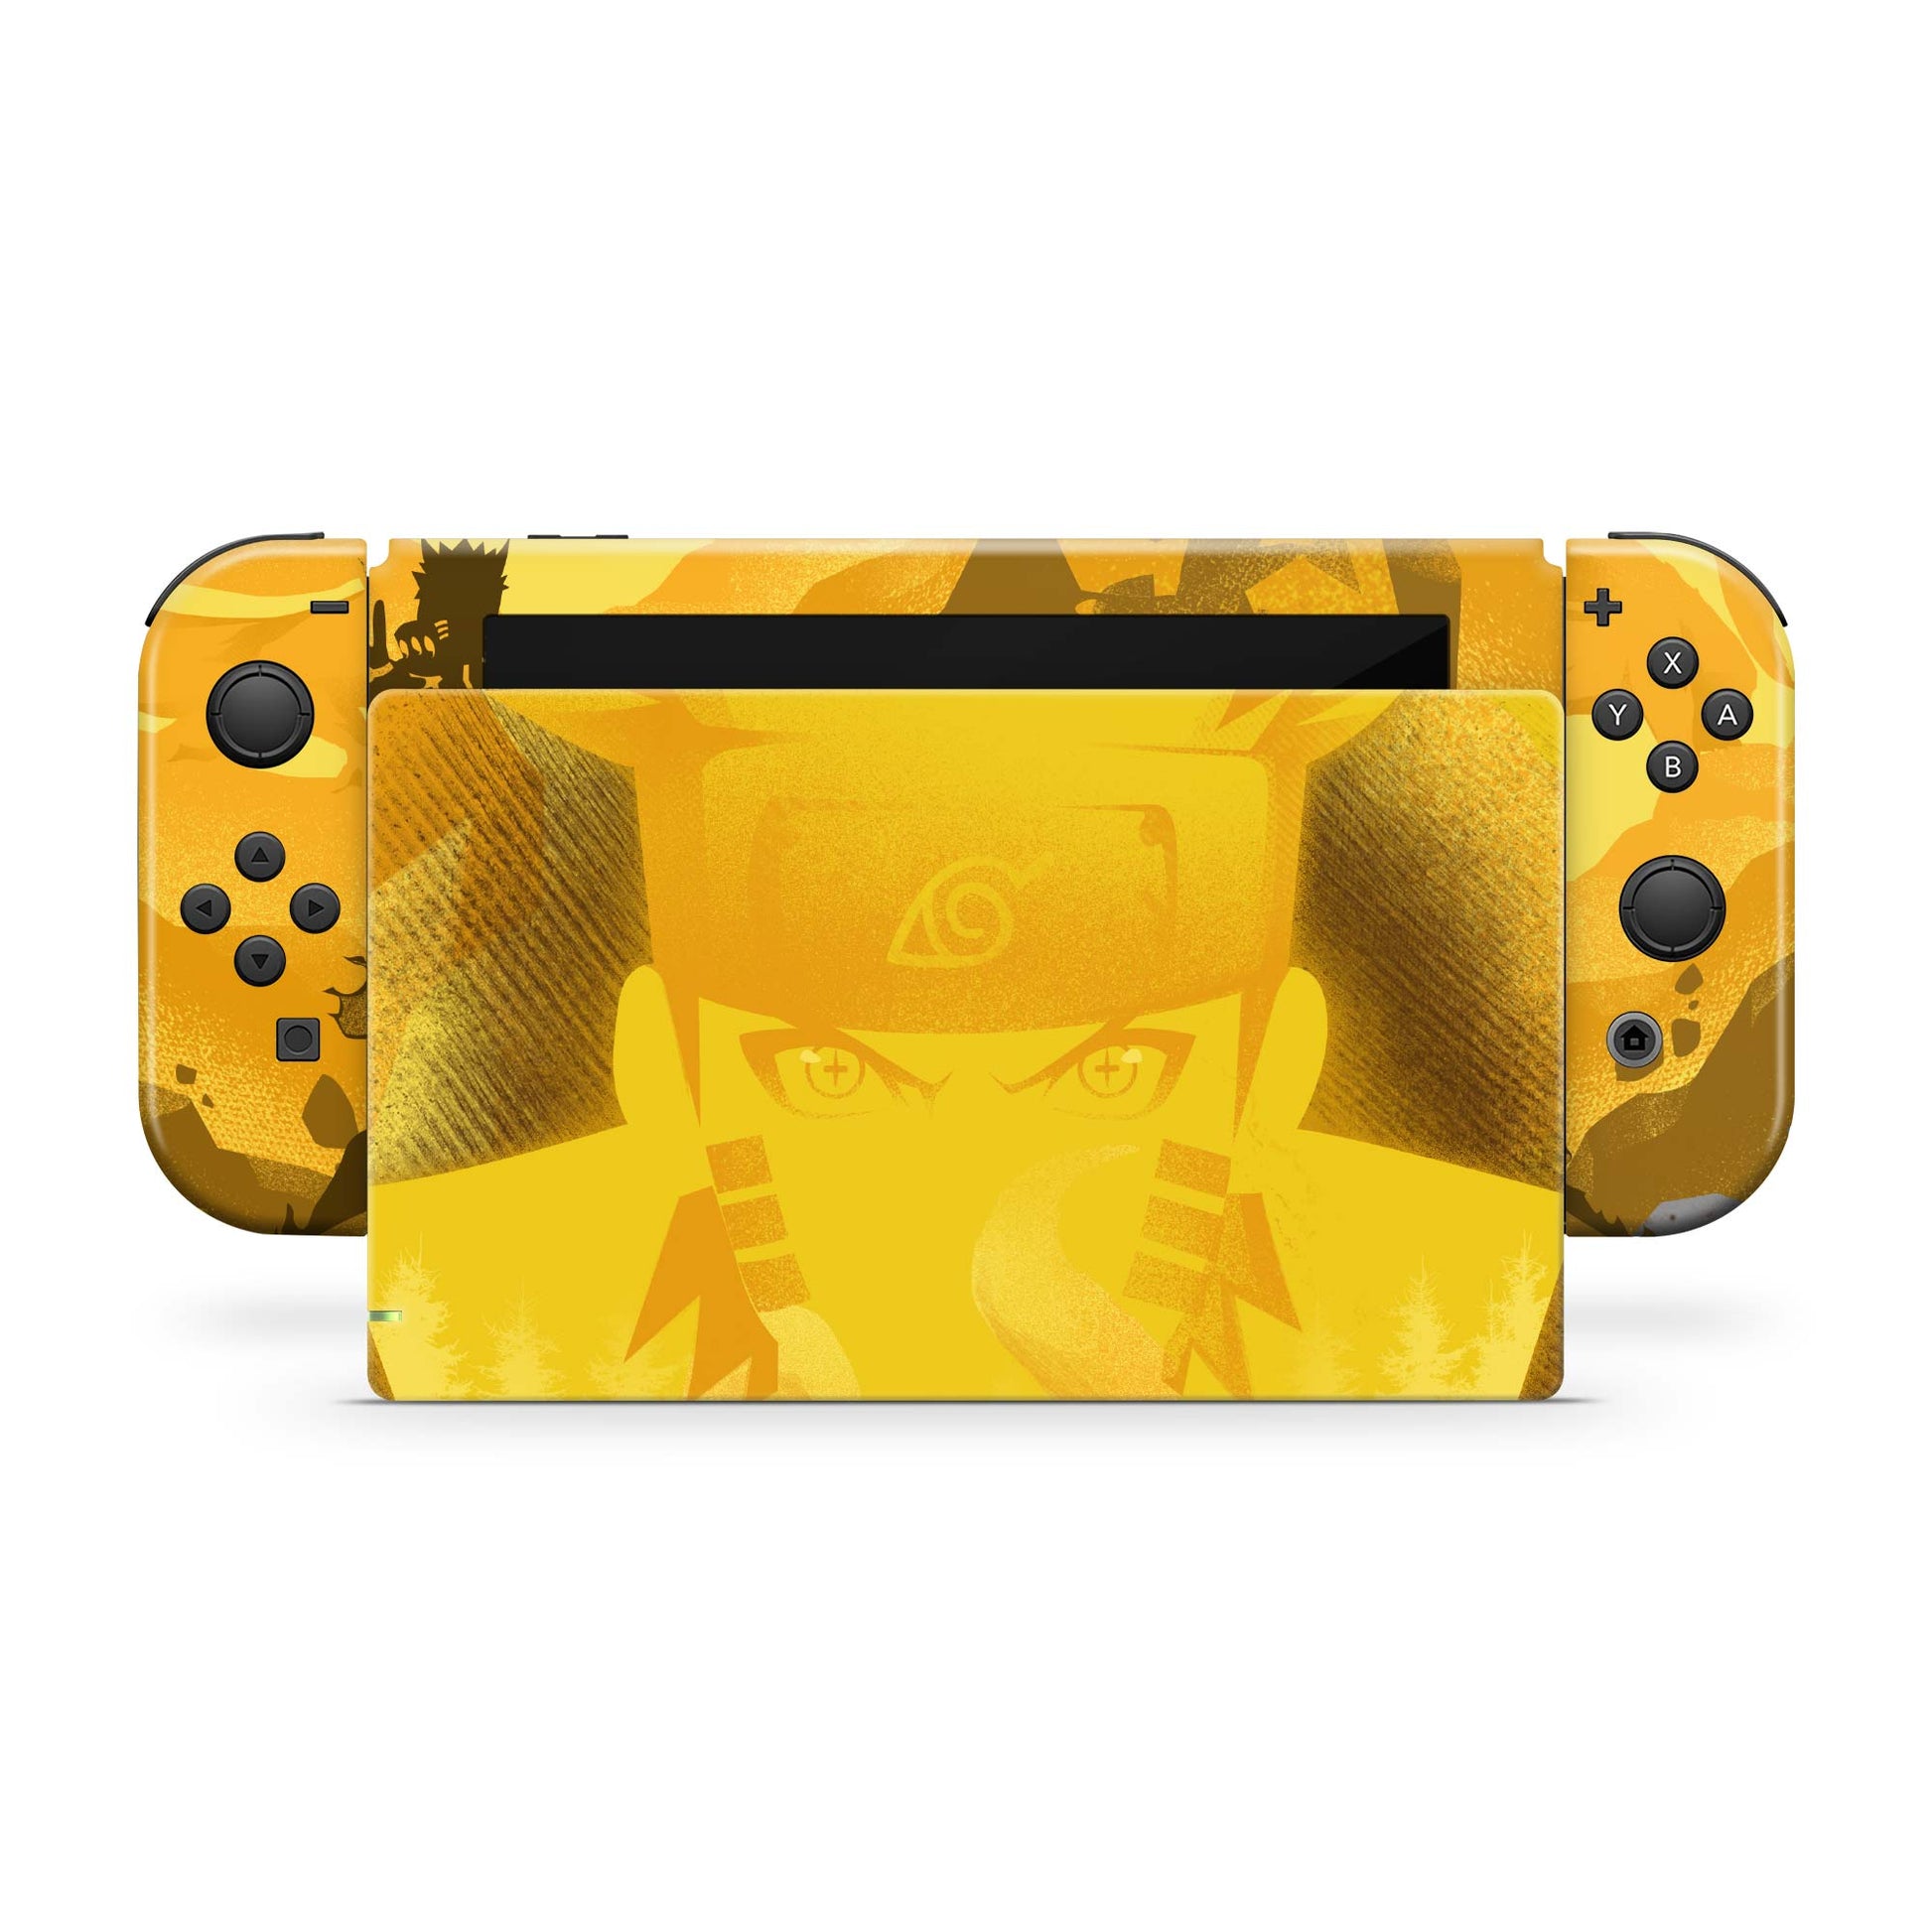 Cheetah Camo - Nintendo Switch Skins at Rs 999, Mandsaur